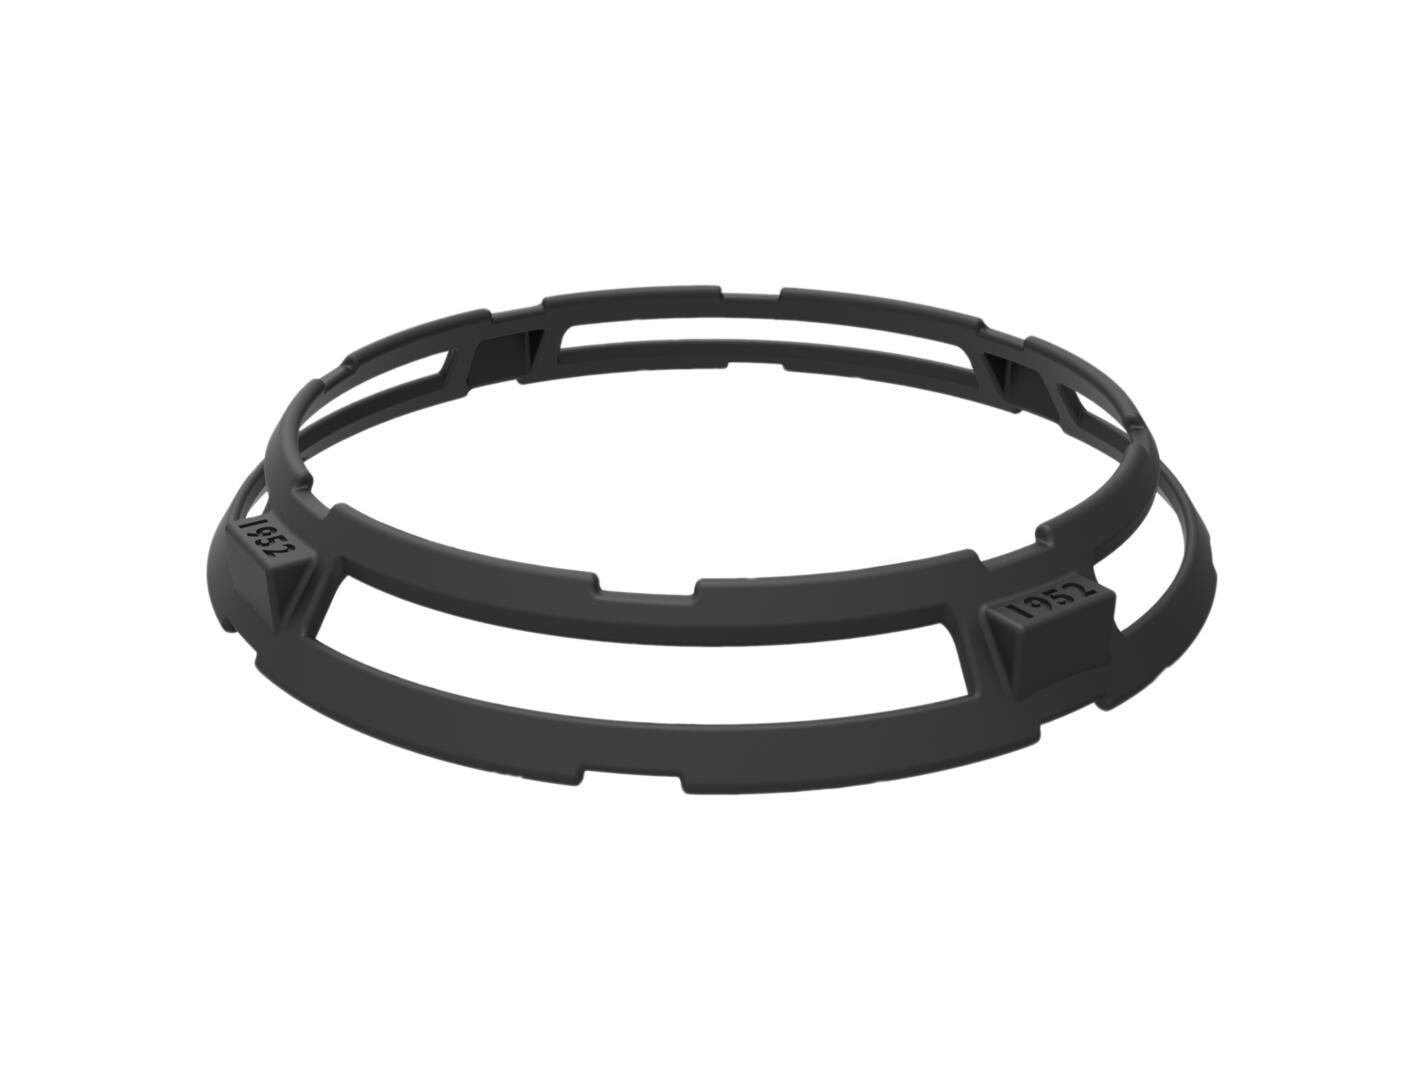 10-Inch Reversible Wok Ring